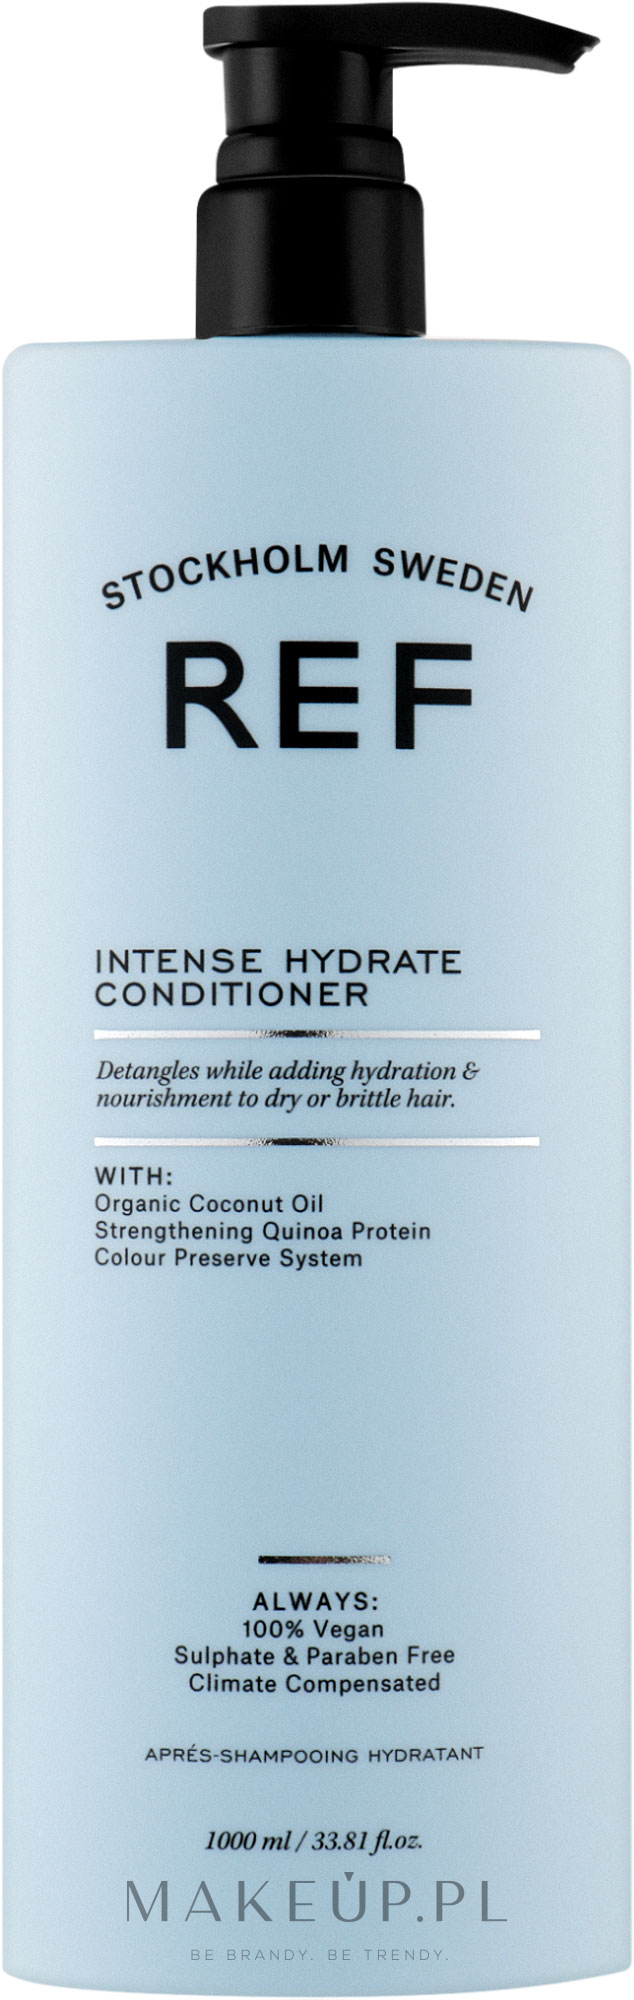 Nawilżająca odżywka do włosów - REF Intense Hydrate Conditioner  — Zdjęcie 1000 ml